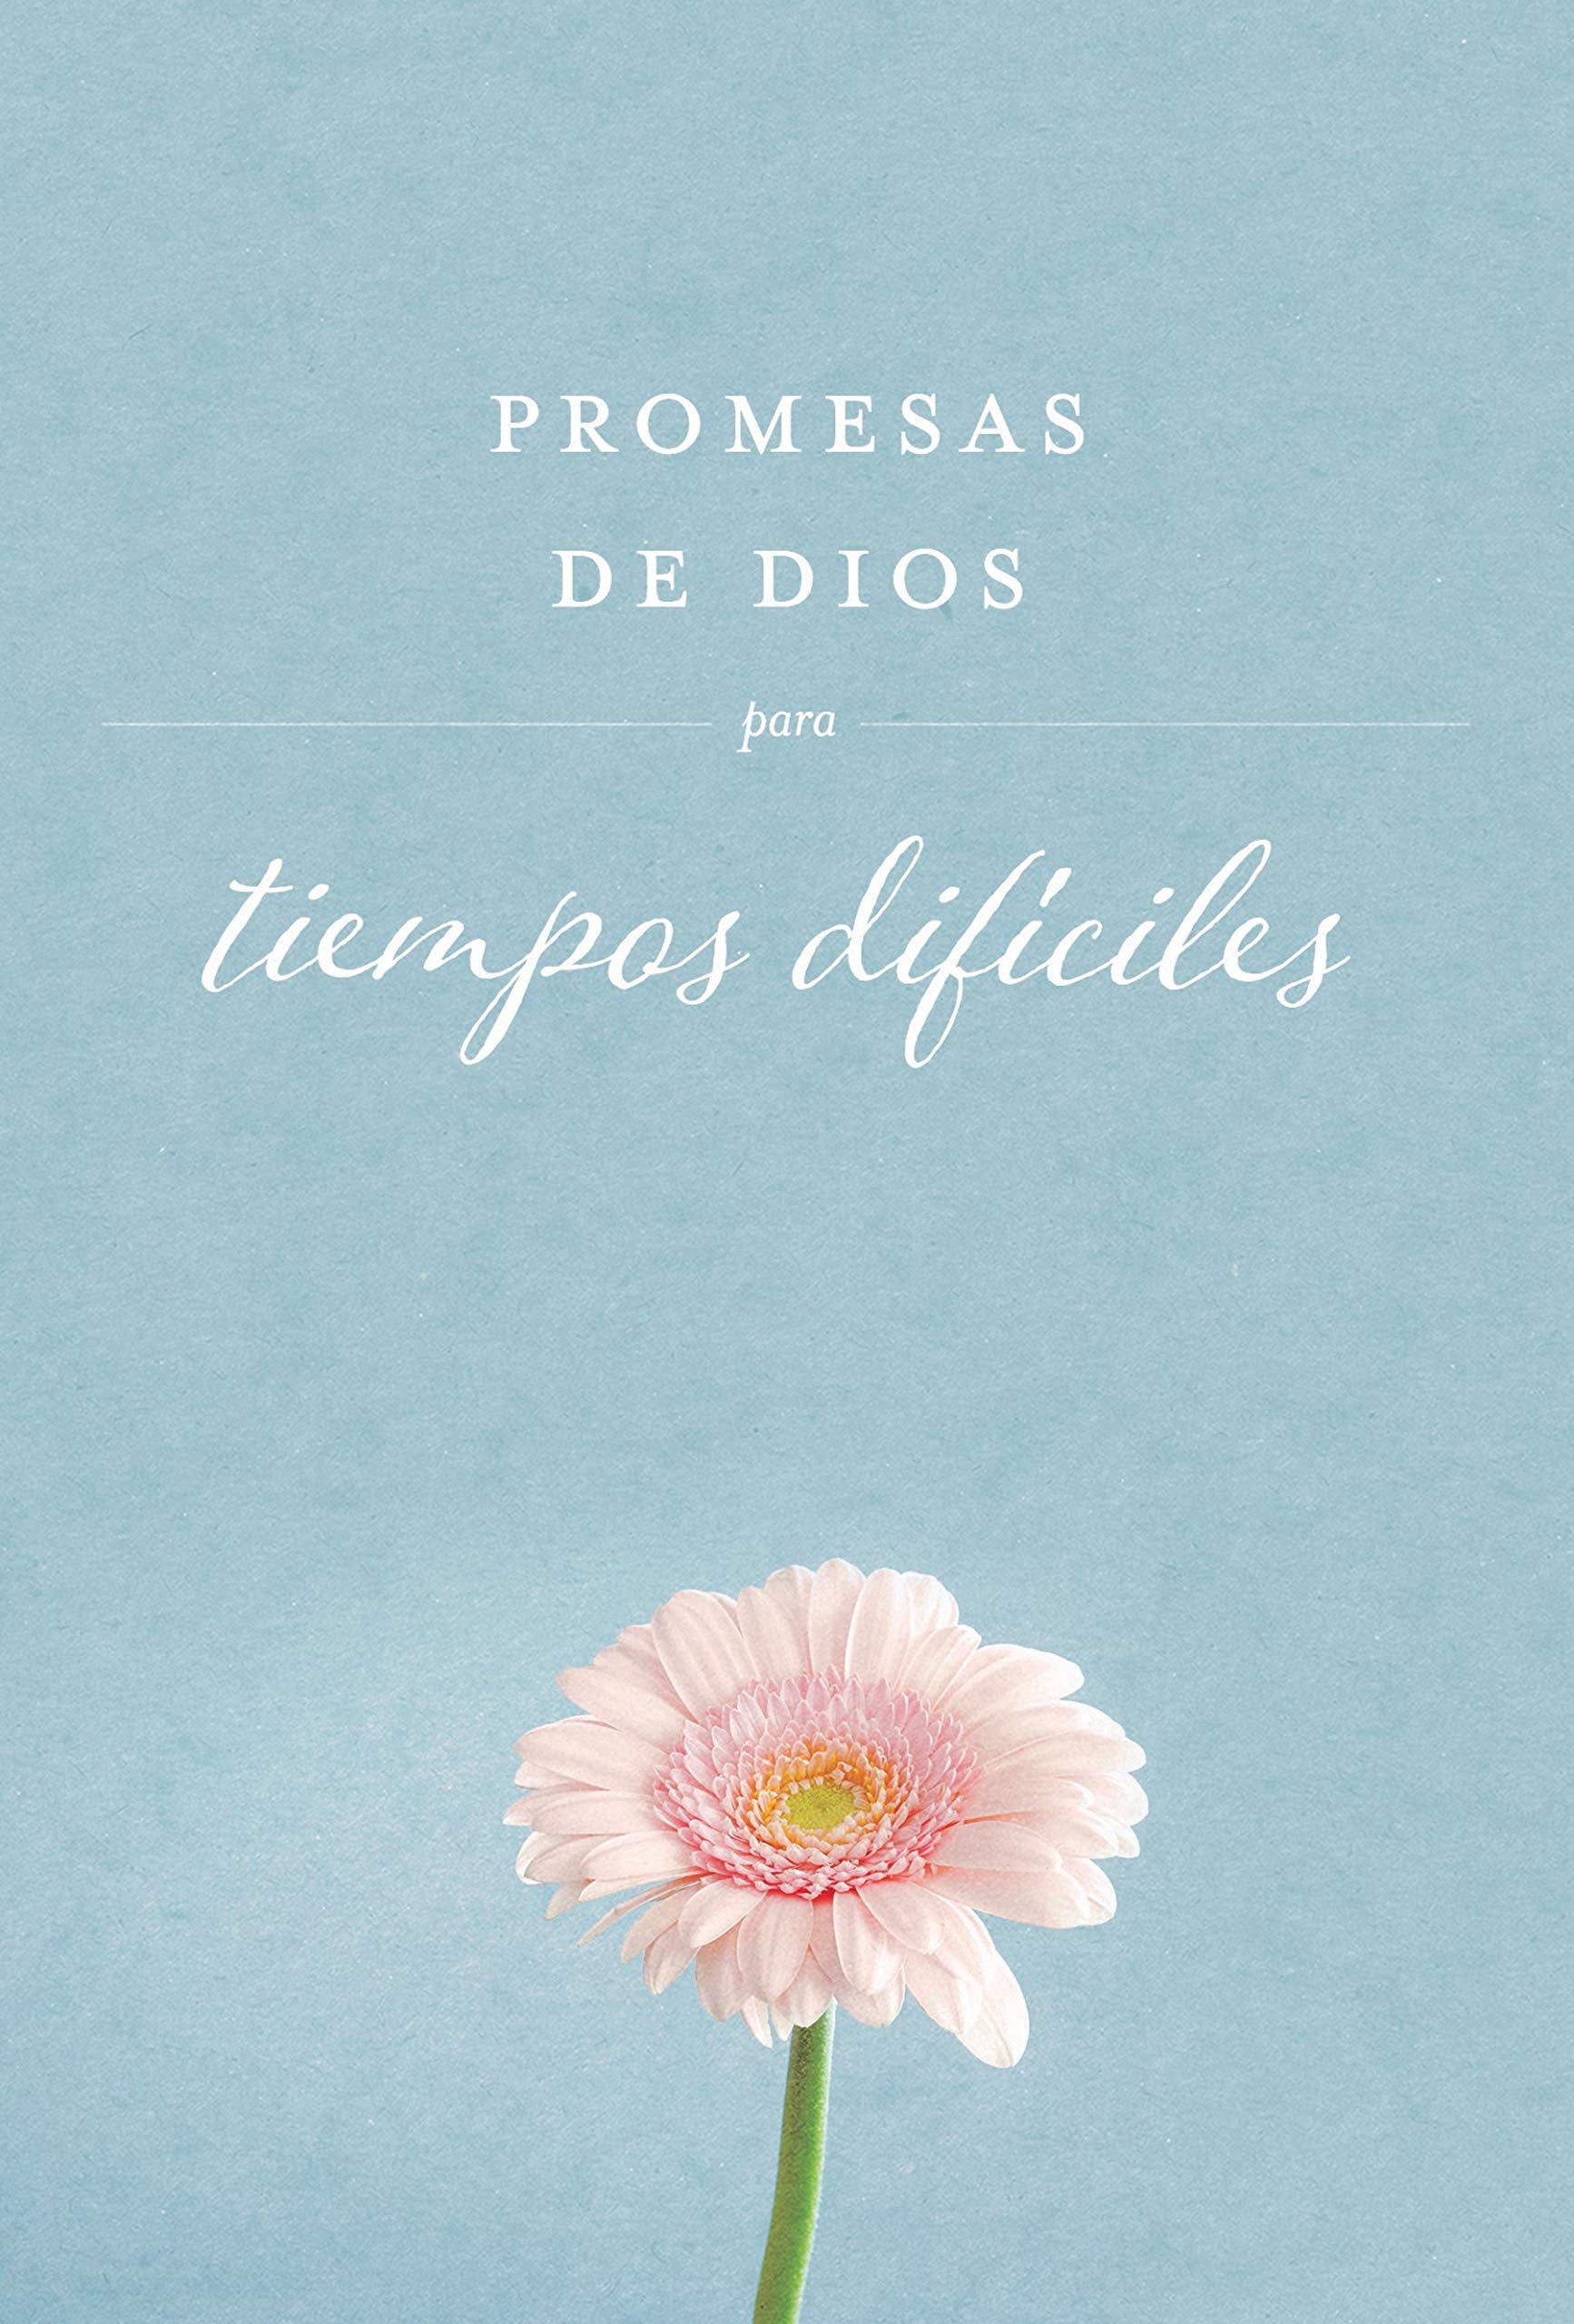 Promesas de Dios para tiempos difíciles - Librería Libros Cristianos - Libro